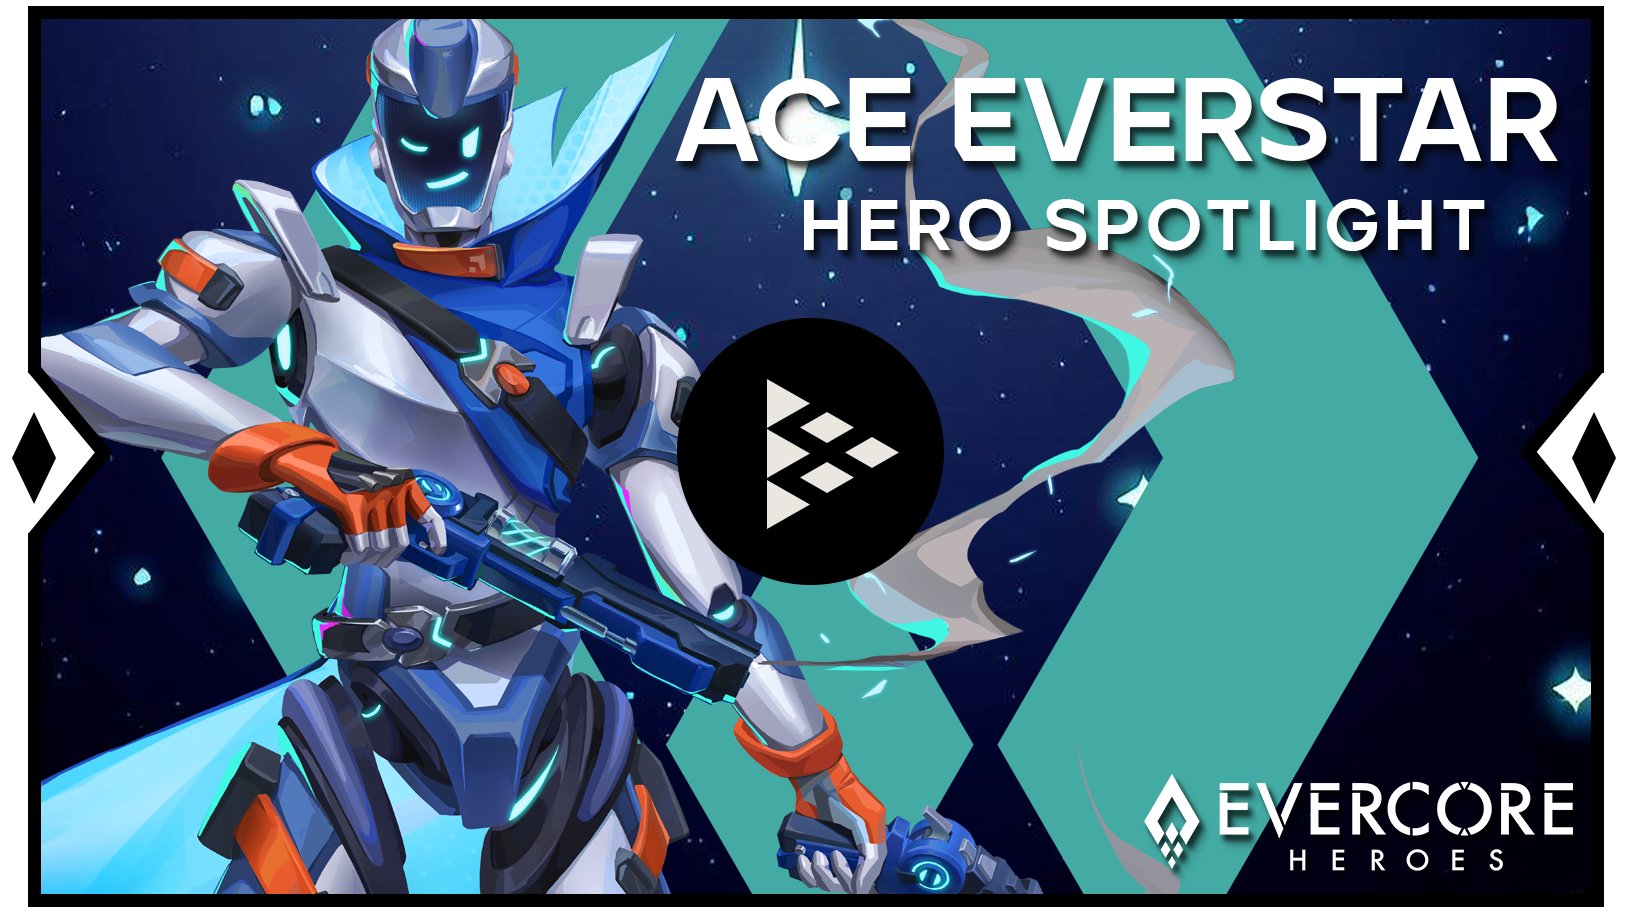 Ace Everstar hero spotlight!